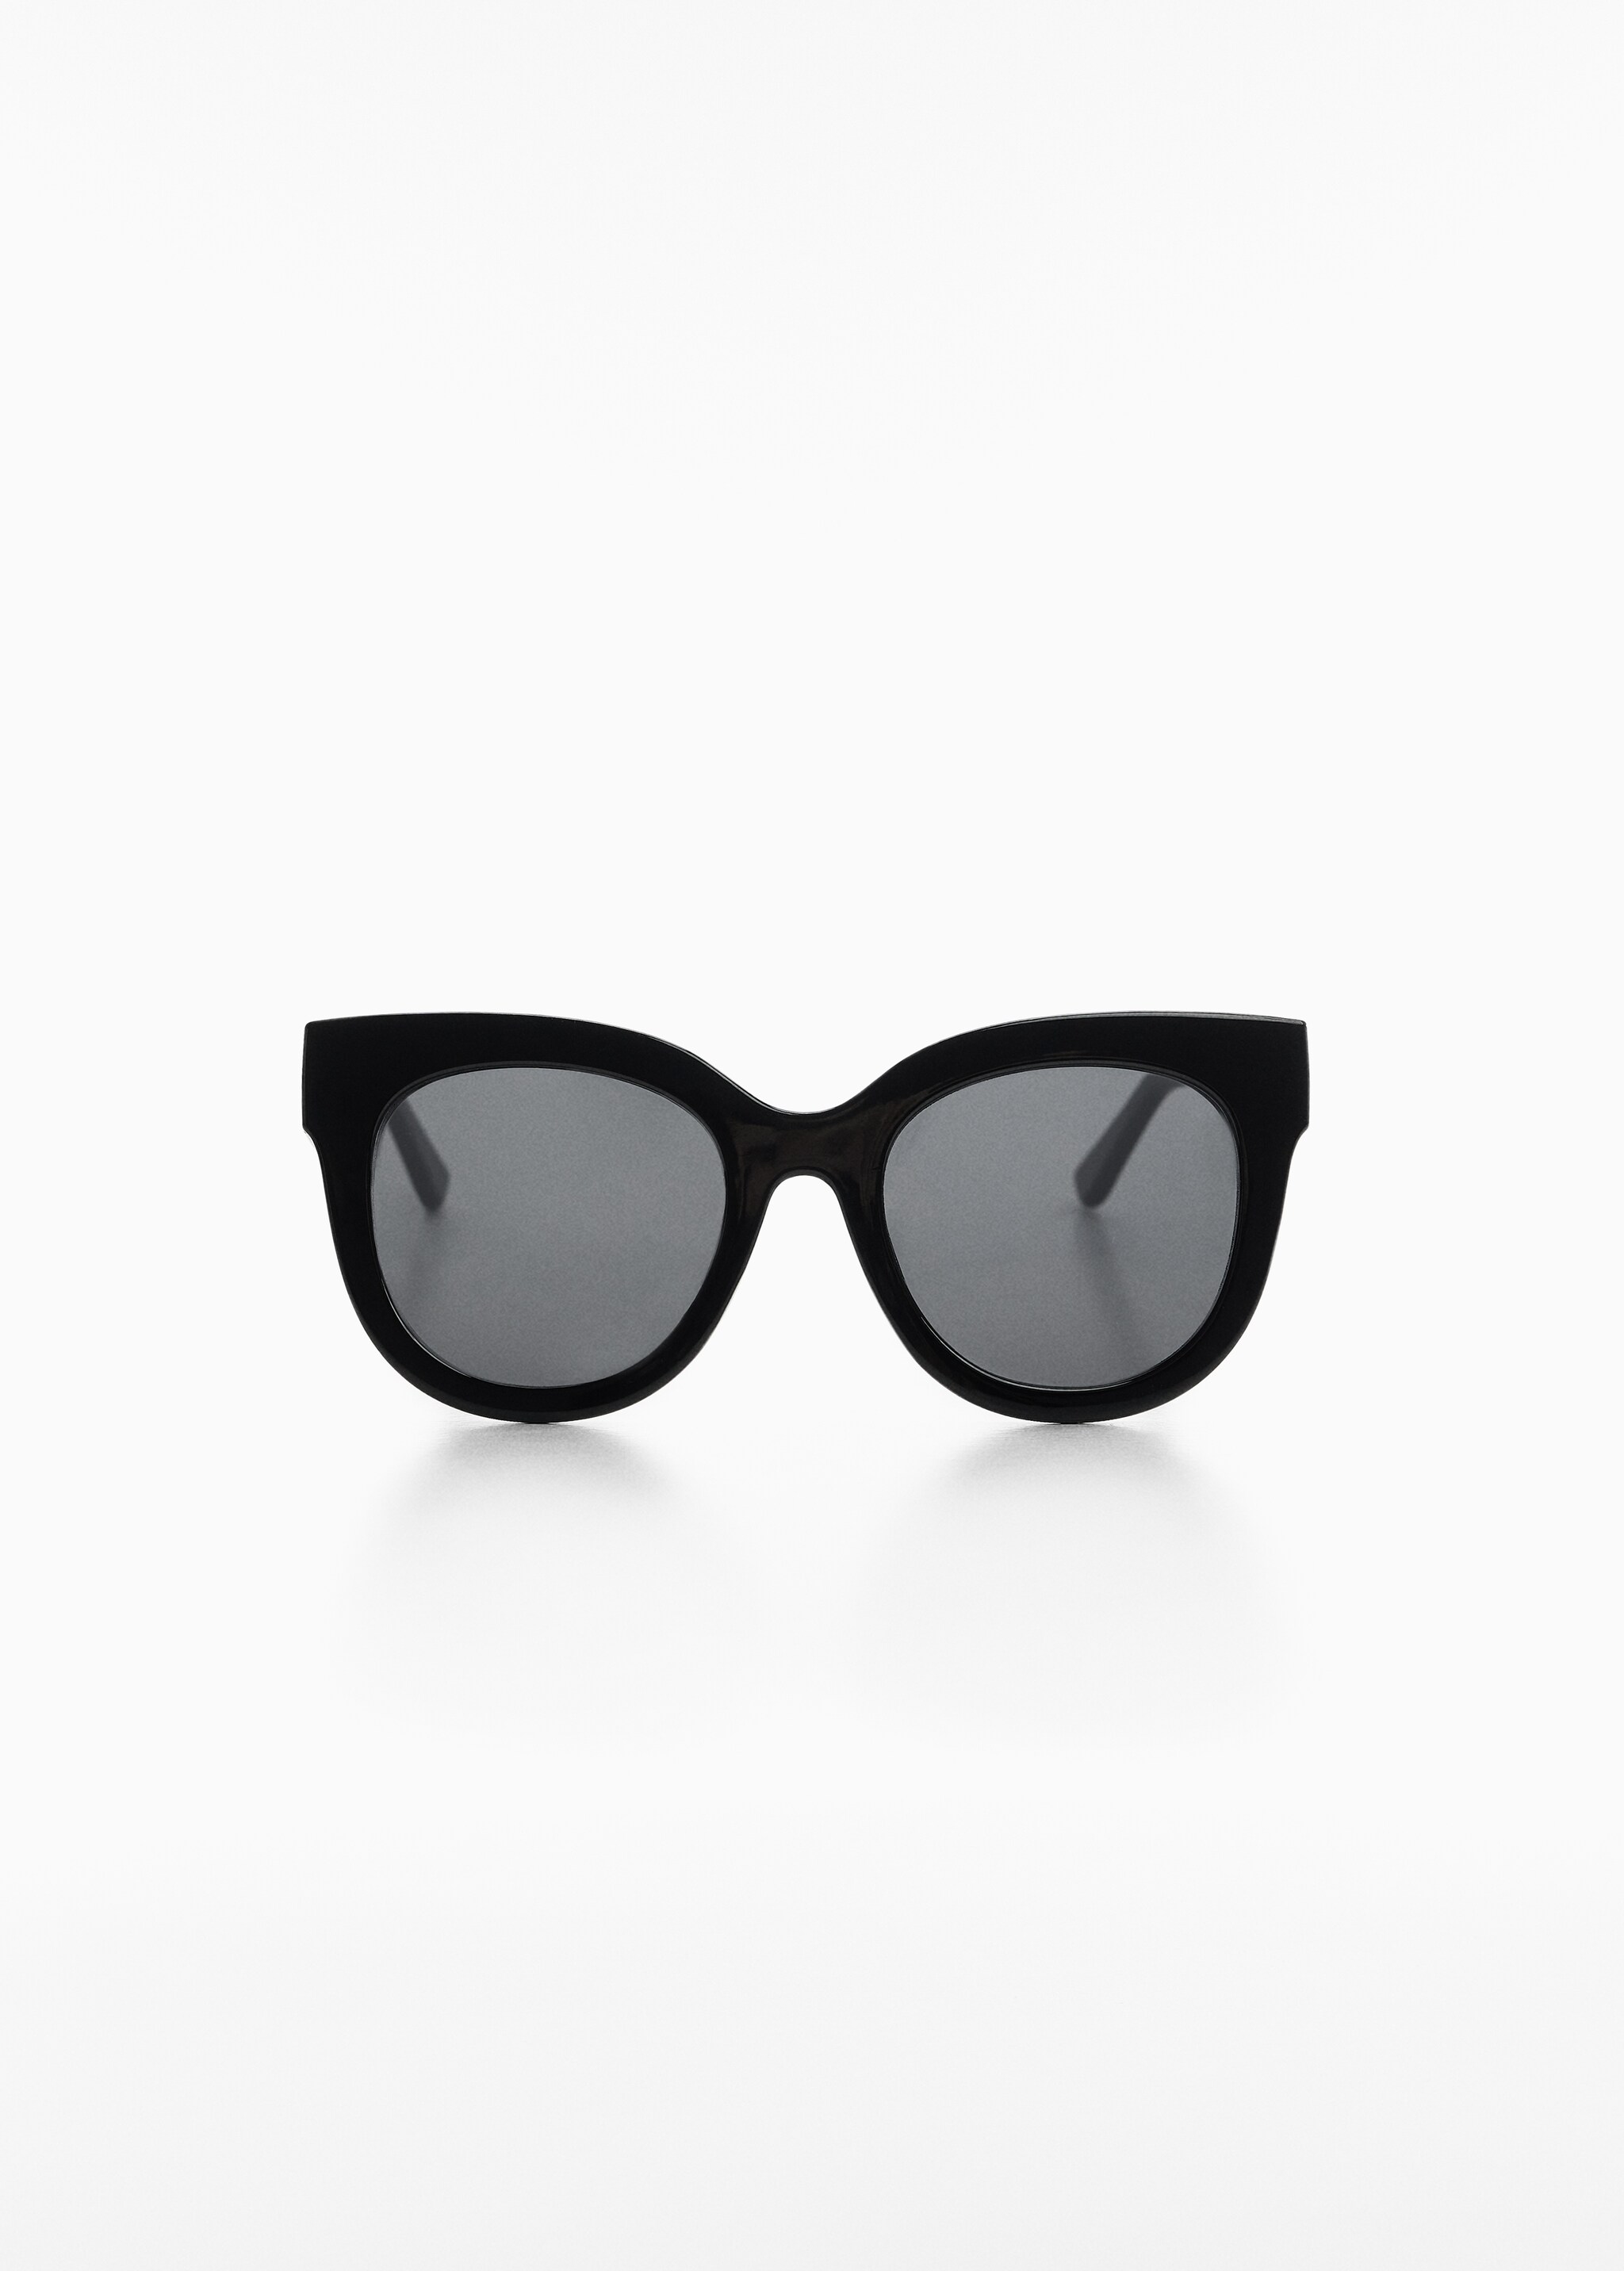 Sonnenbrille im Retro-Stil - Artikel ohne Model